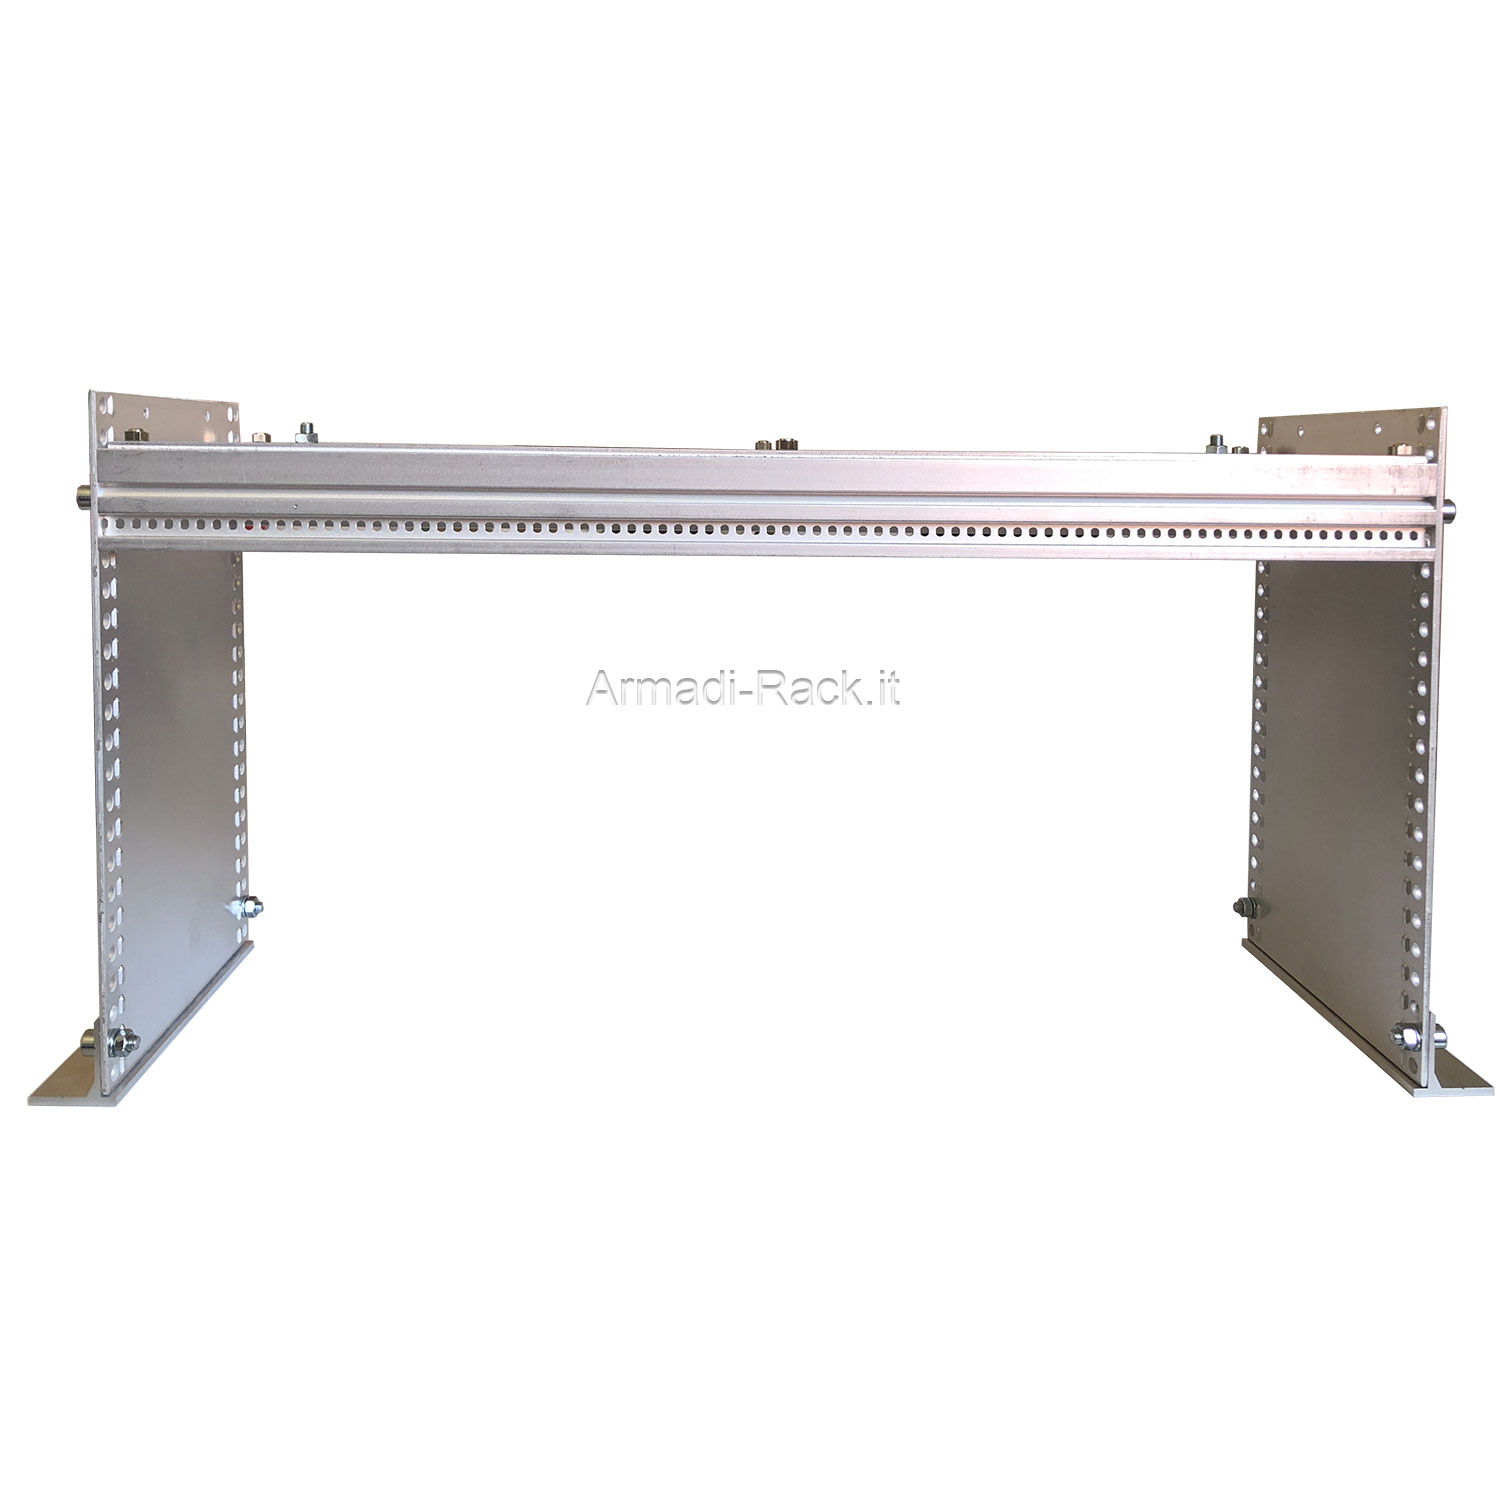 Telaio subrack in alluminio altezza 3 unità, profondità 230 mm, con...